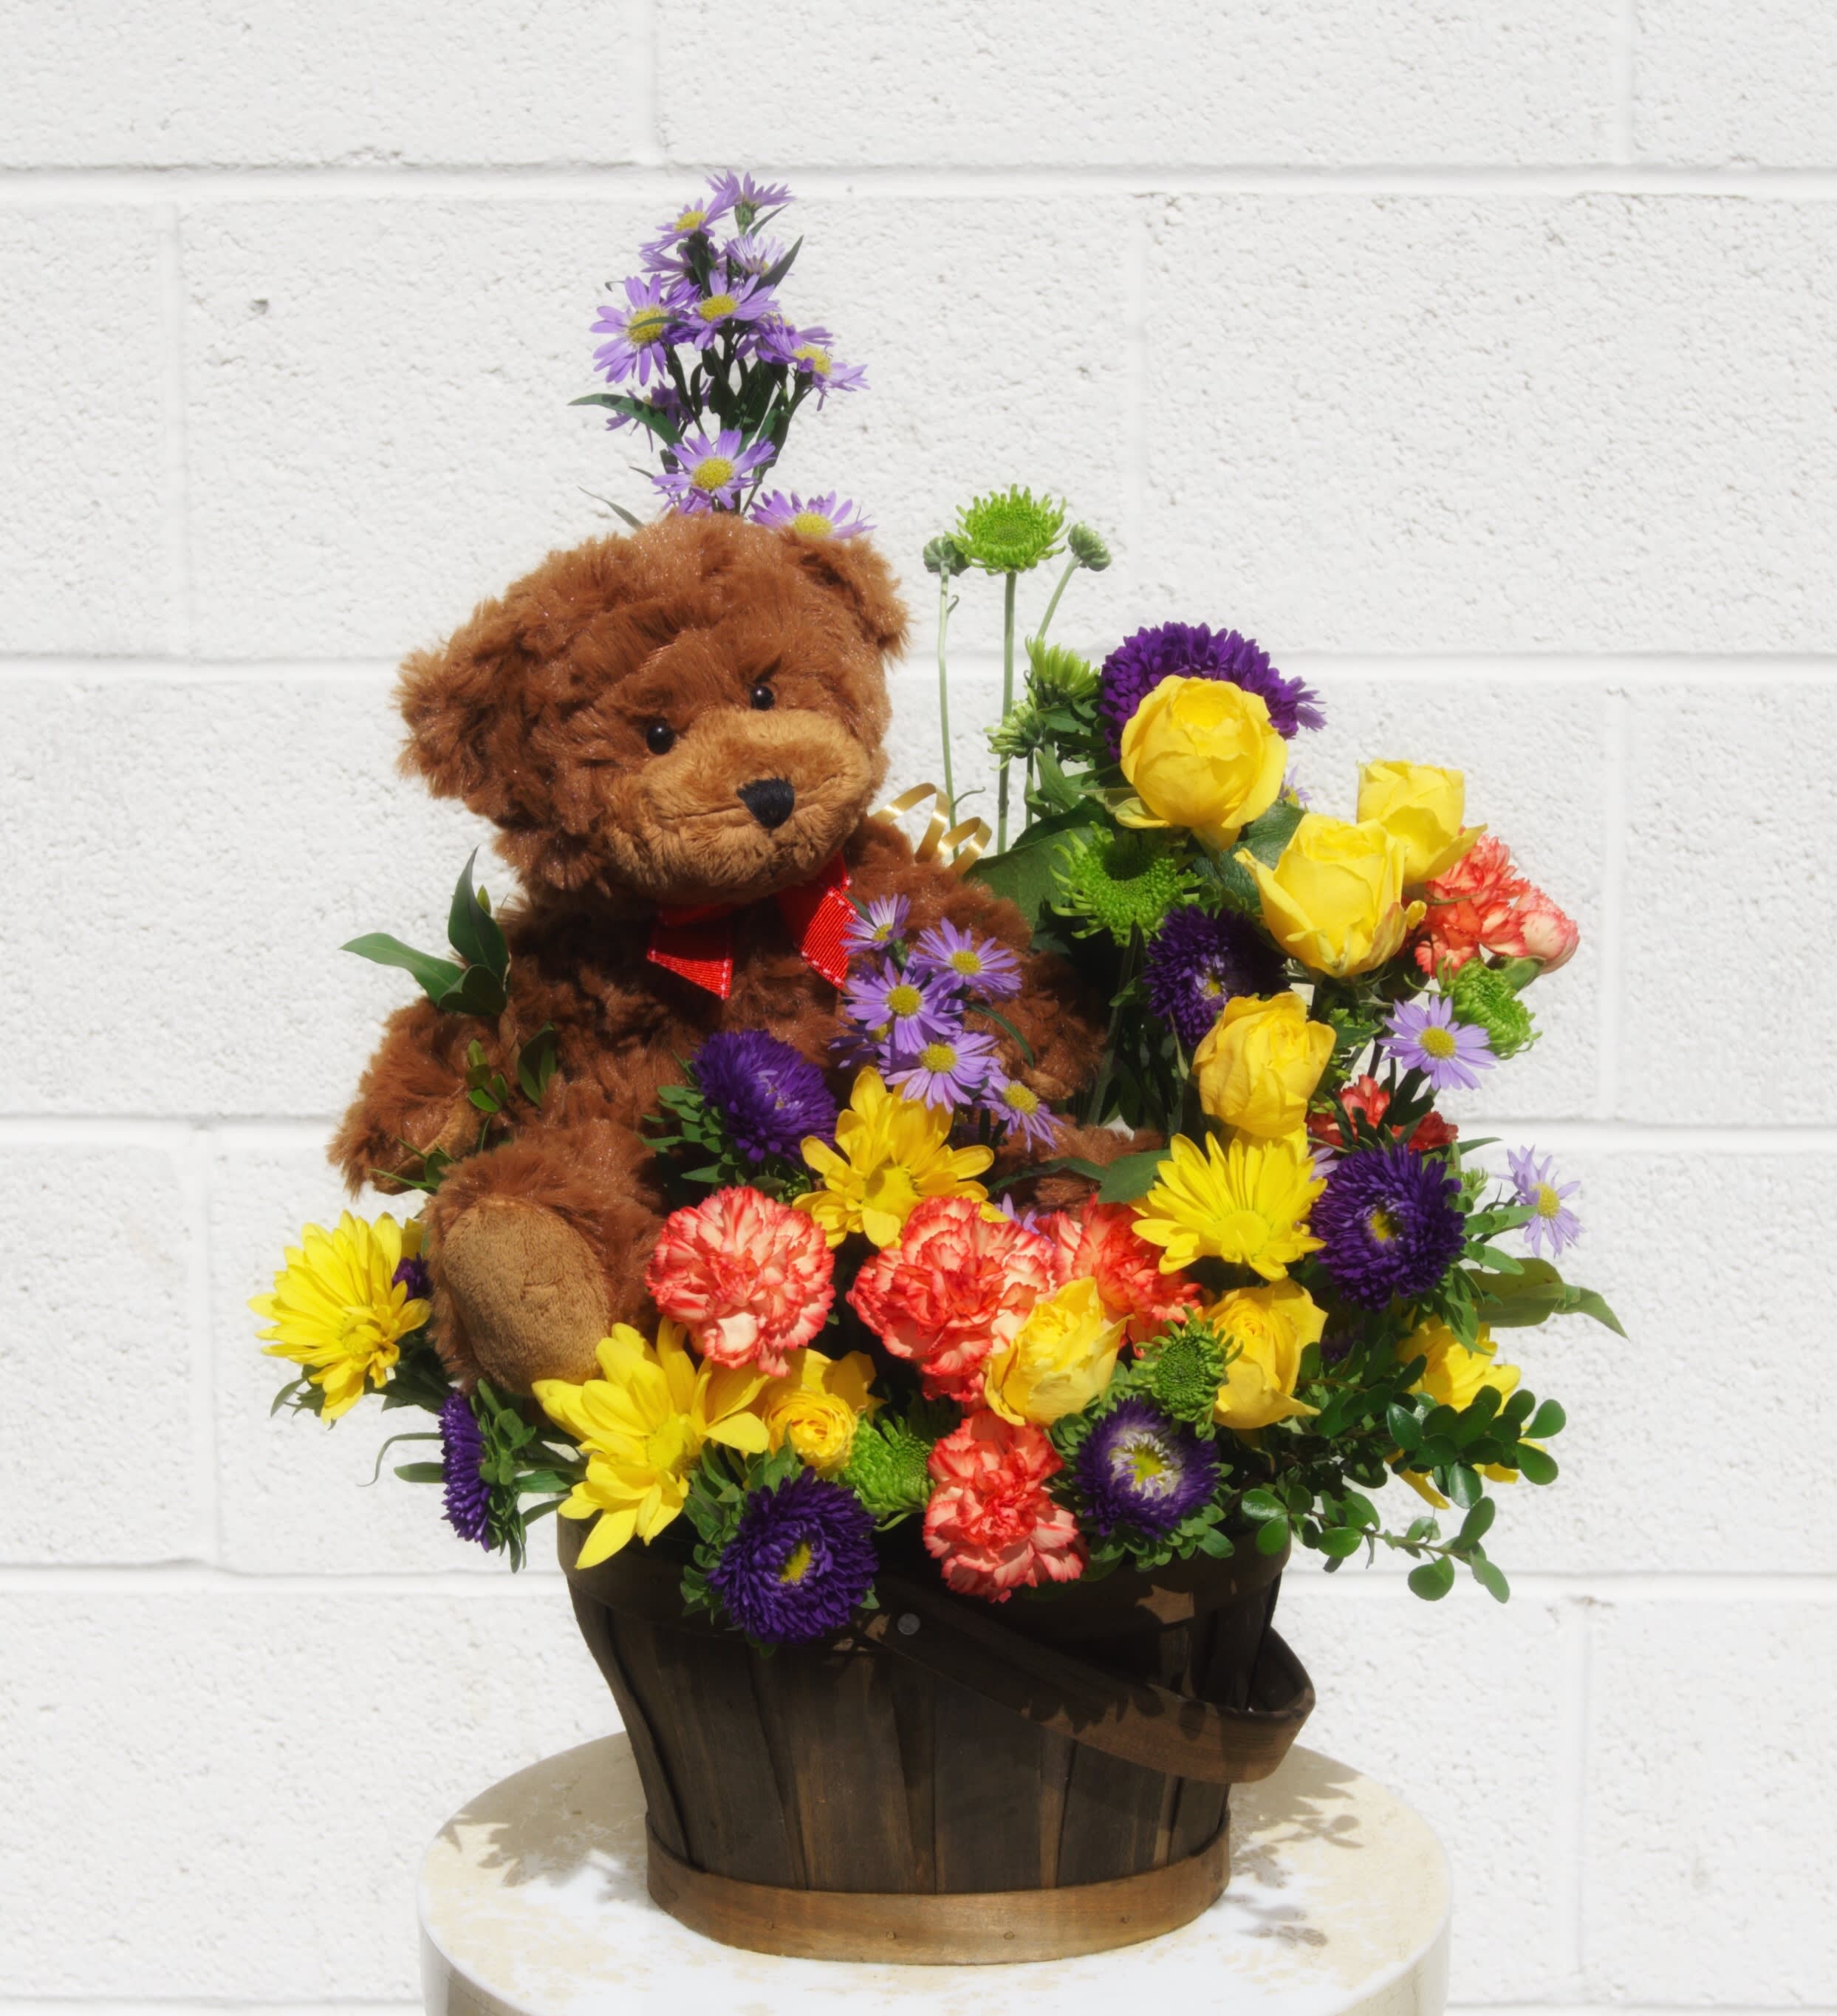 flower and teddy bear